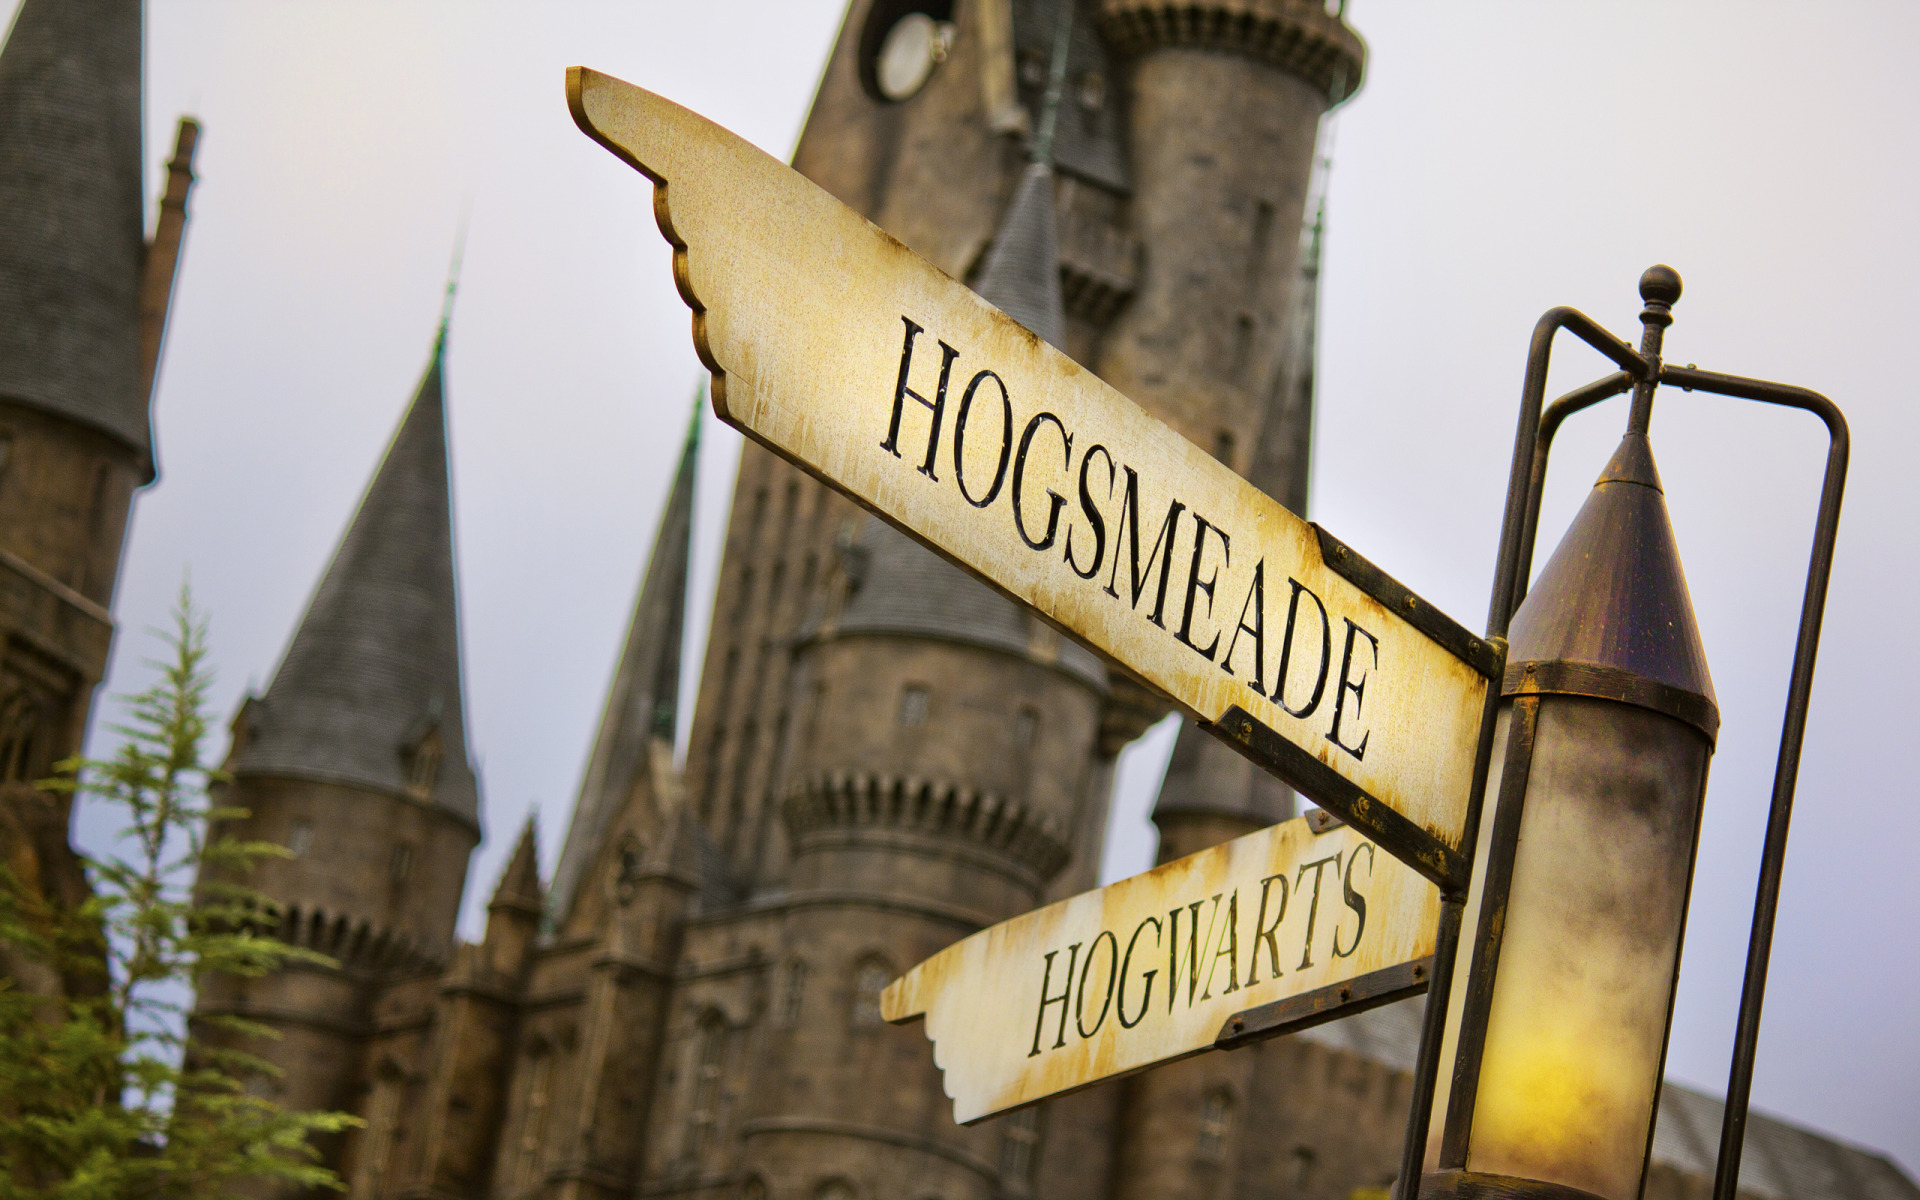 hogsmeade.hogwarts